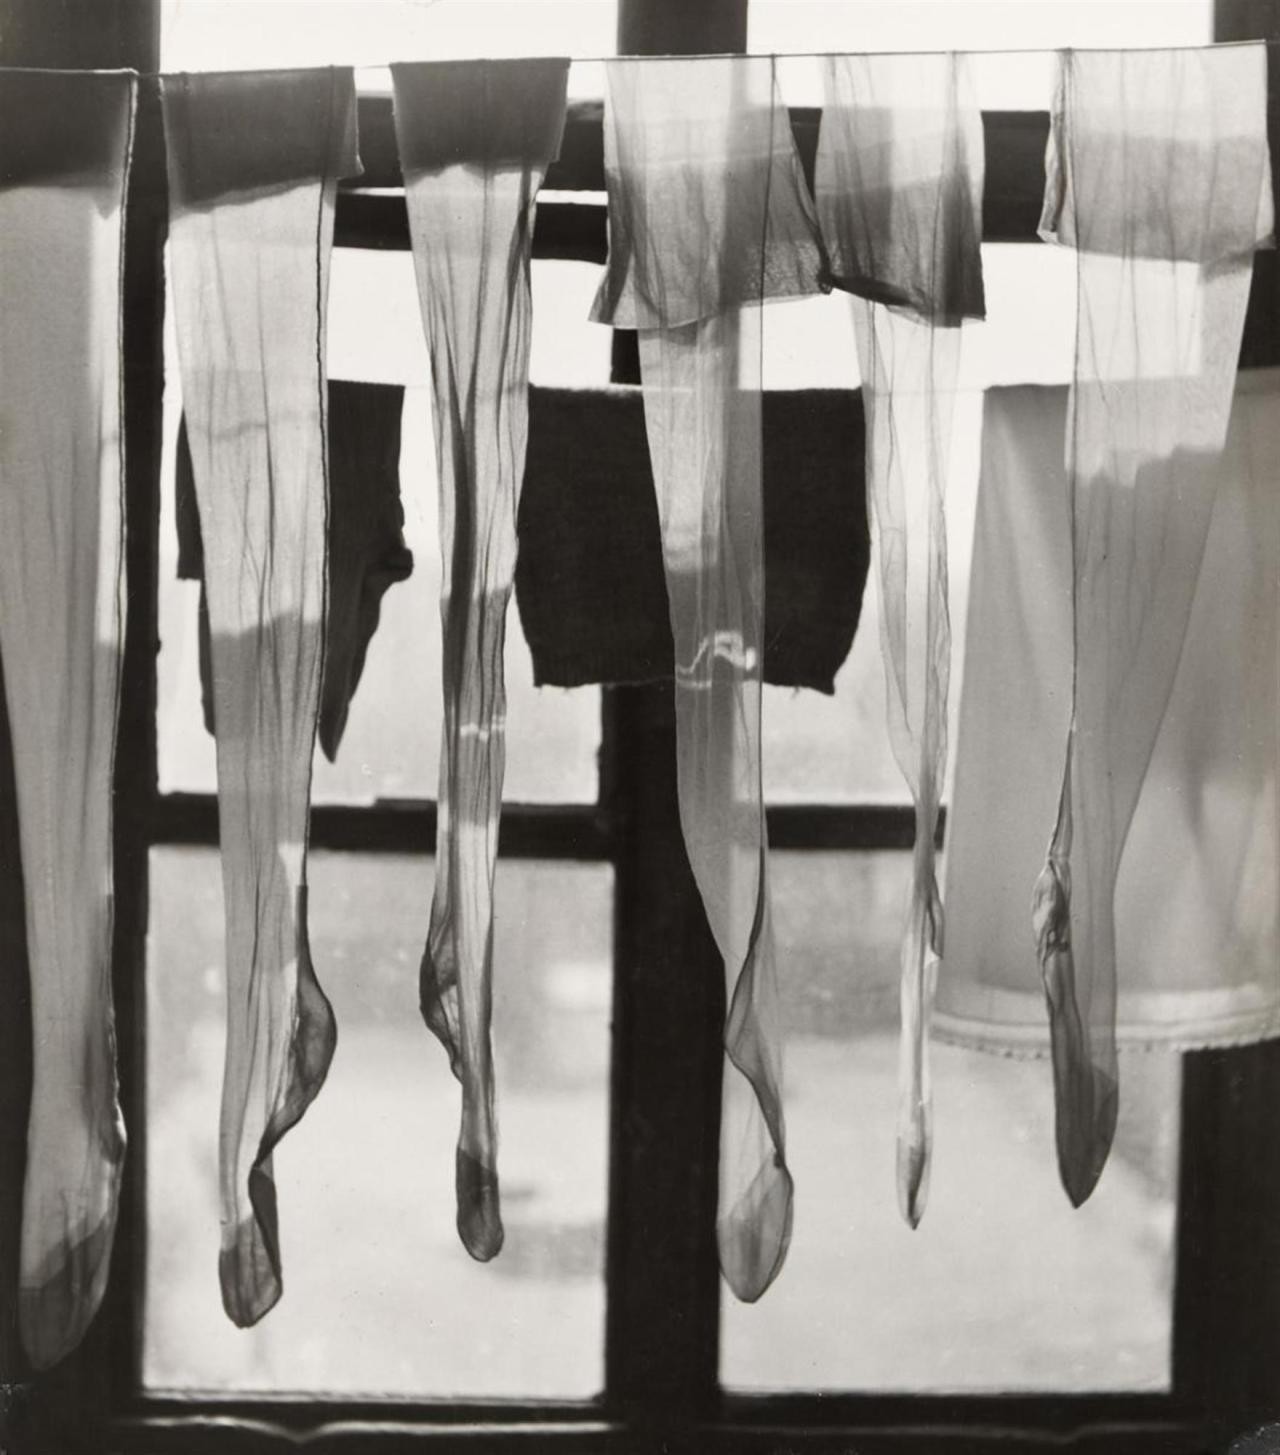 János Szász, Stockings drying in the window, 1966